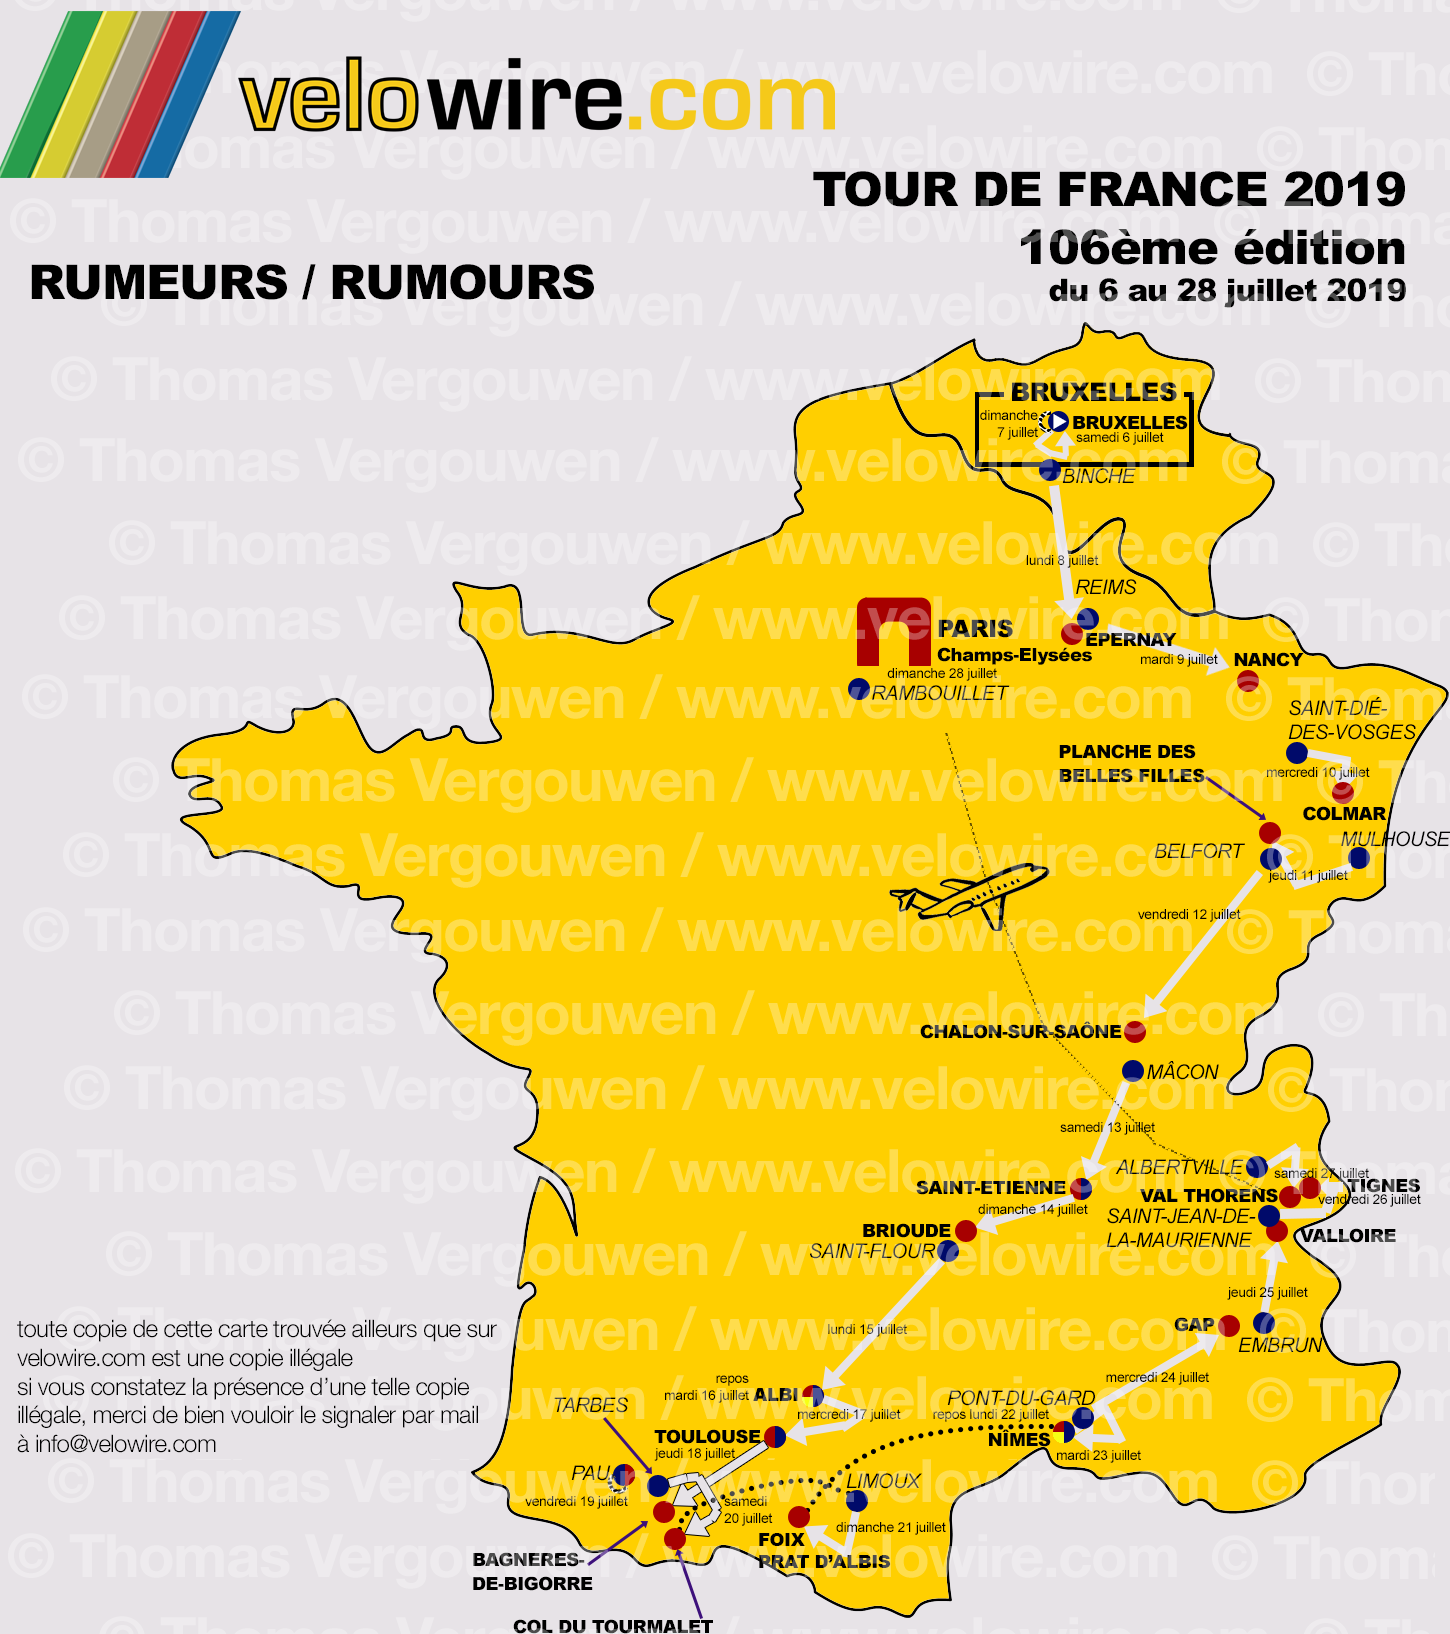 Tour de France 2019 les rumeurs sur le parcours et les villes étapes